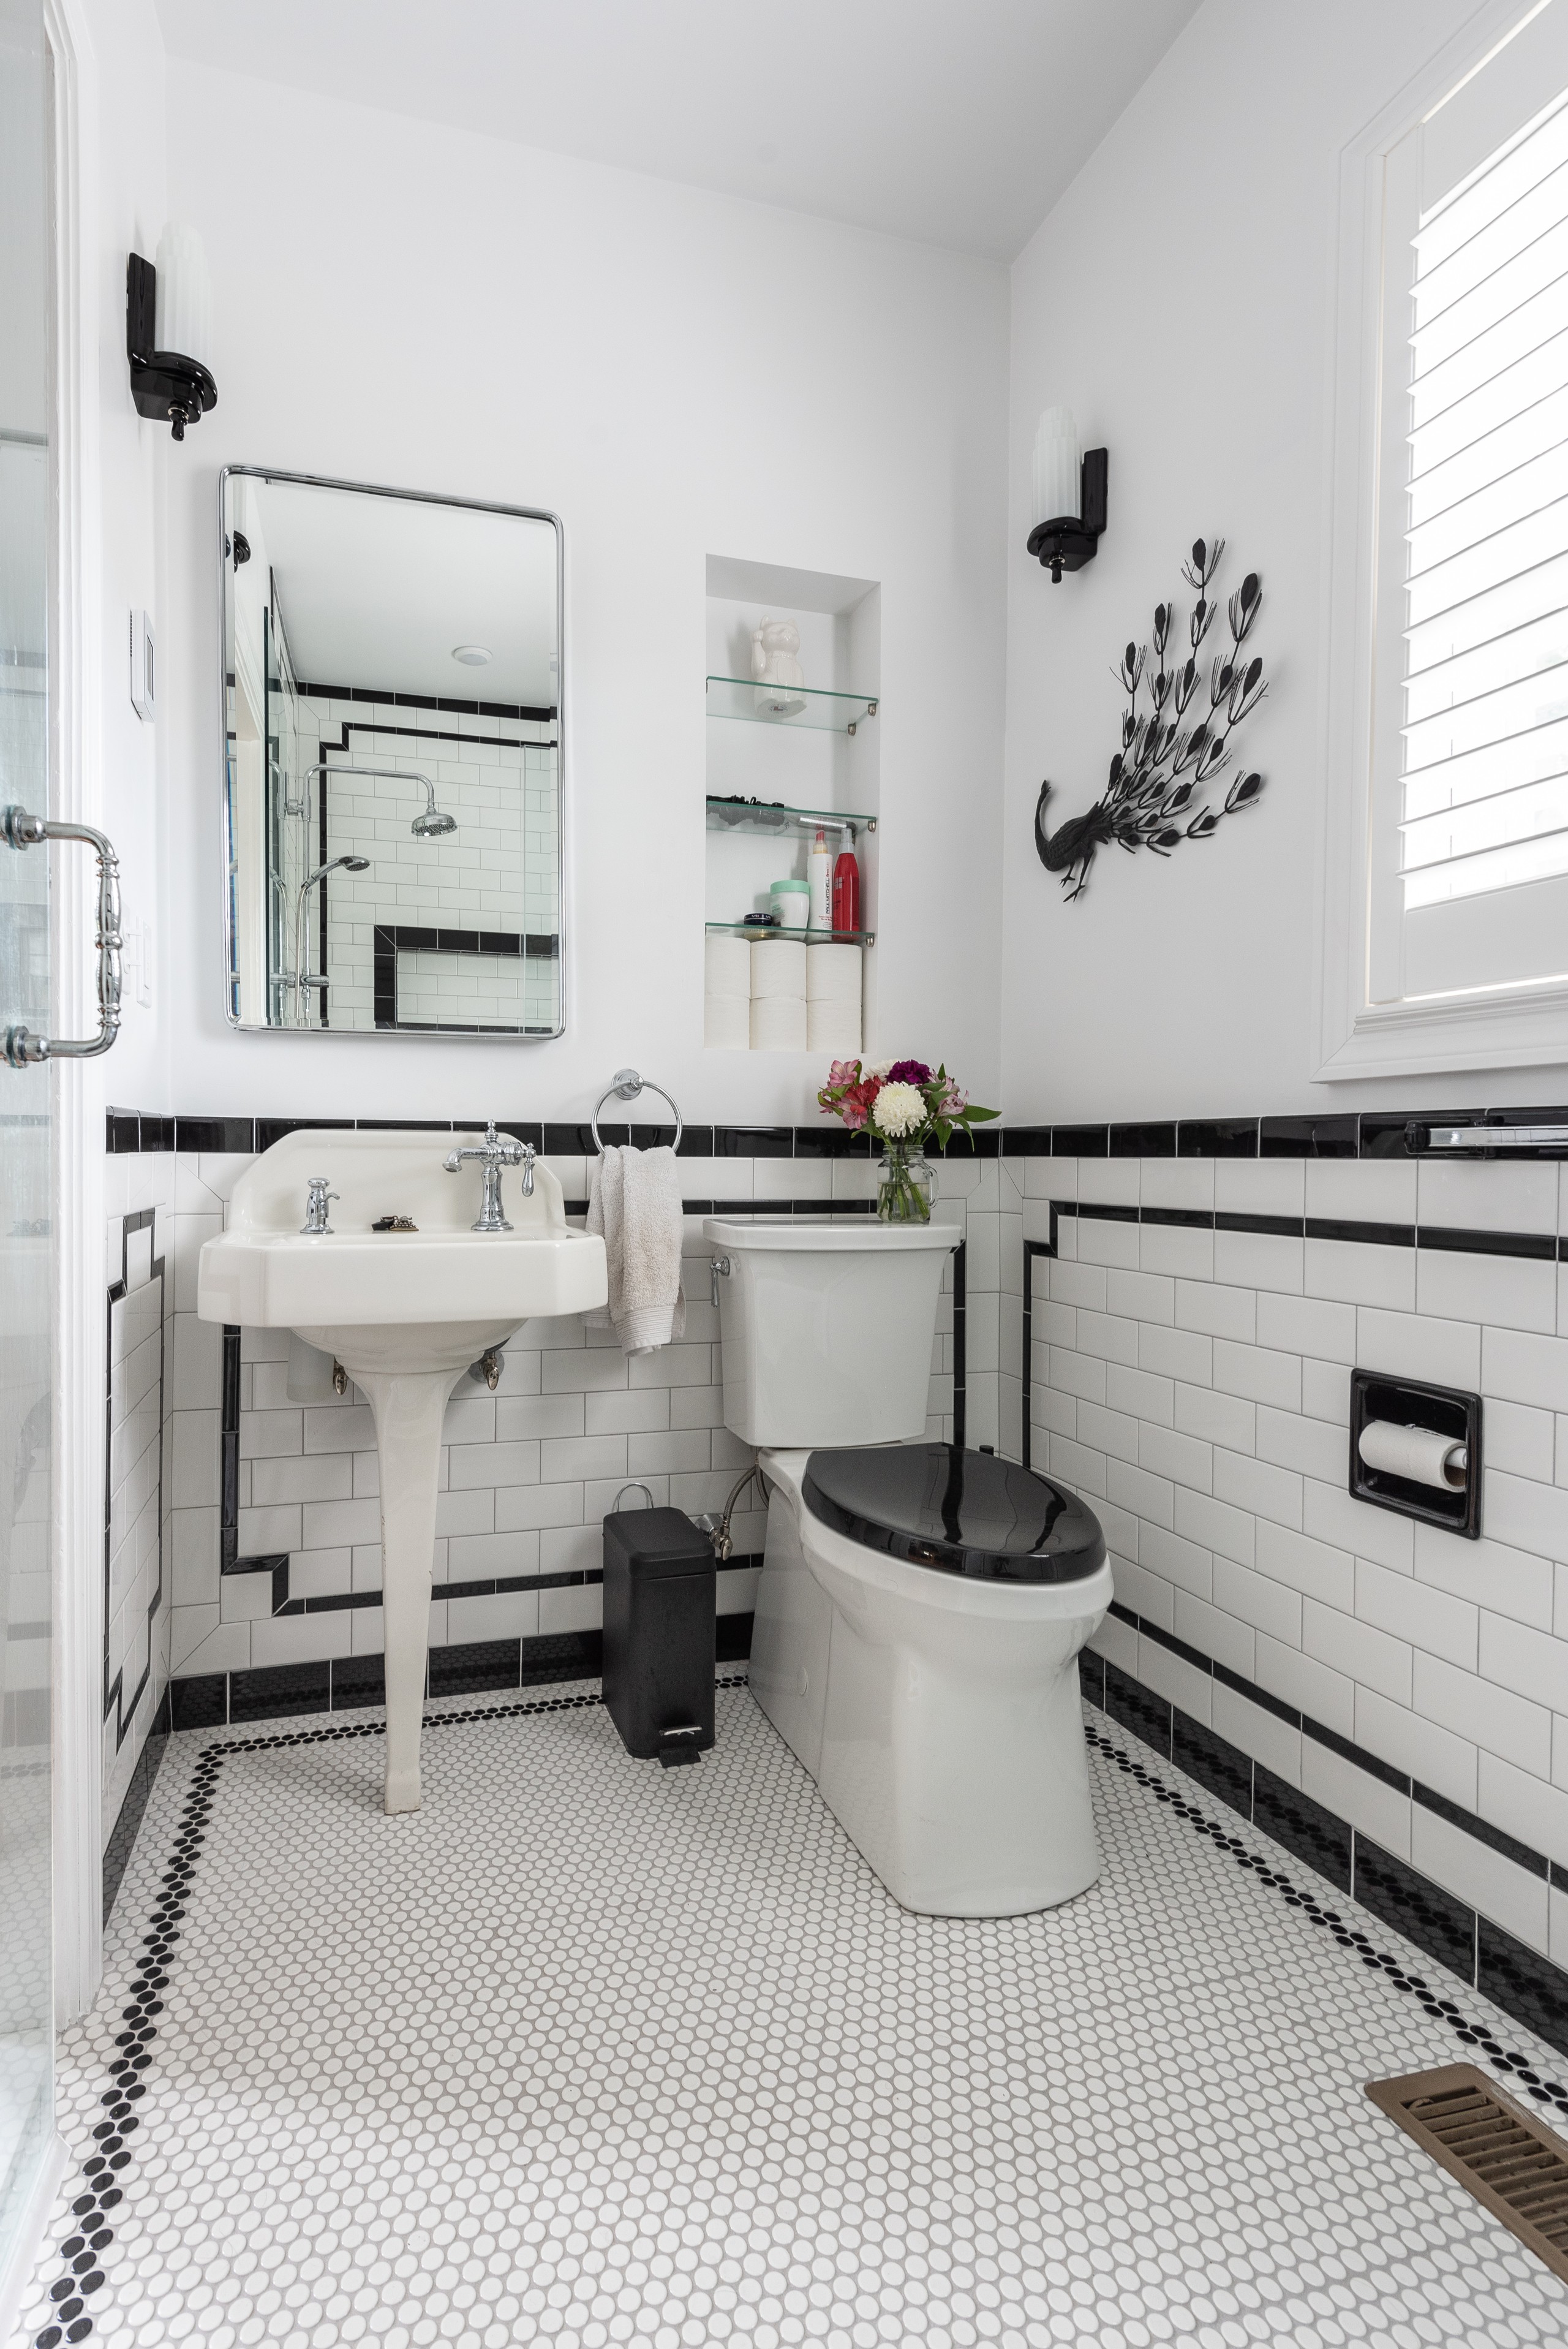 White Tile Bathroom Ideas, Black And White Bathroom Floor Tiles